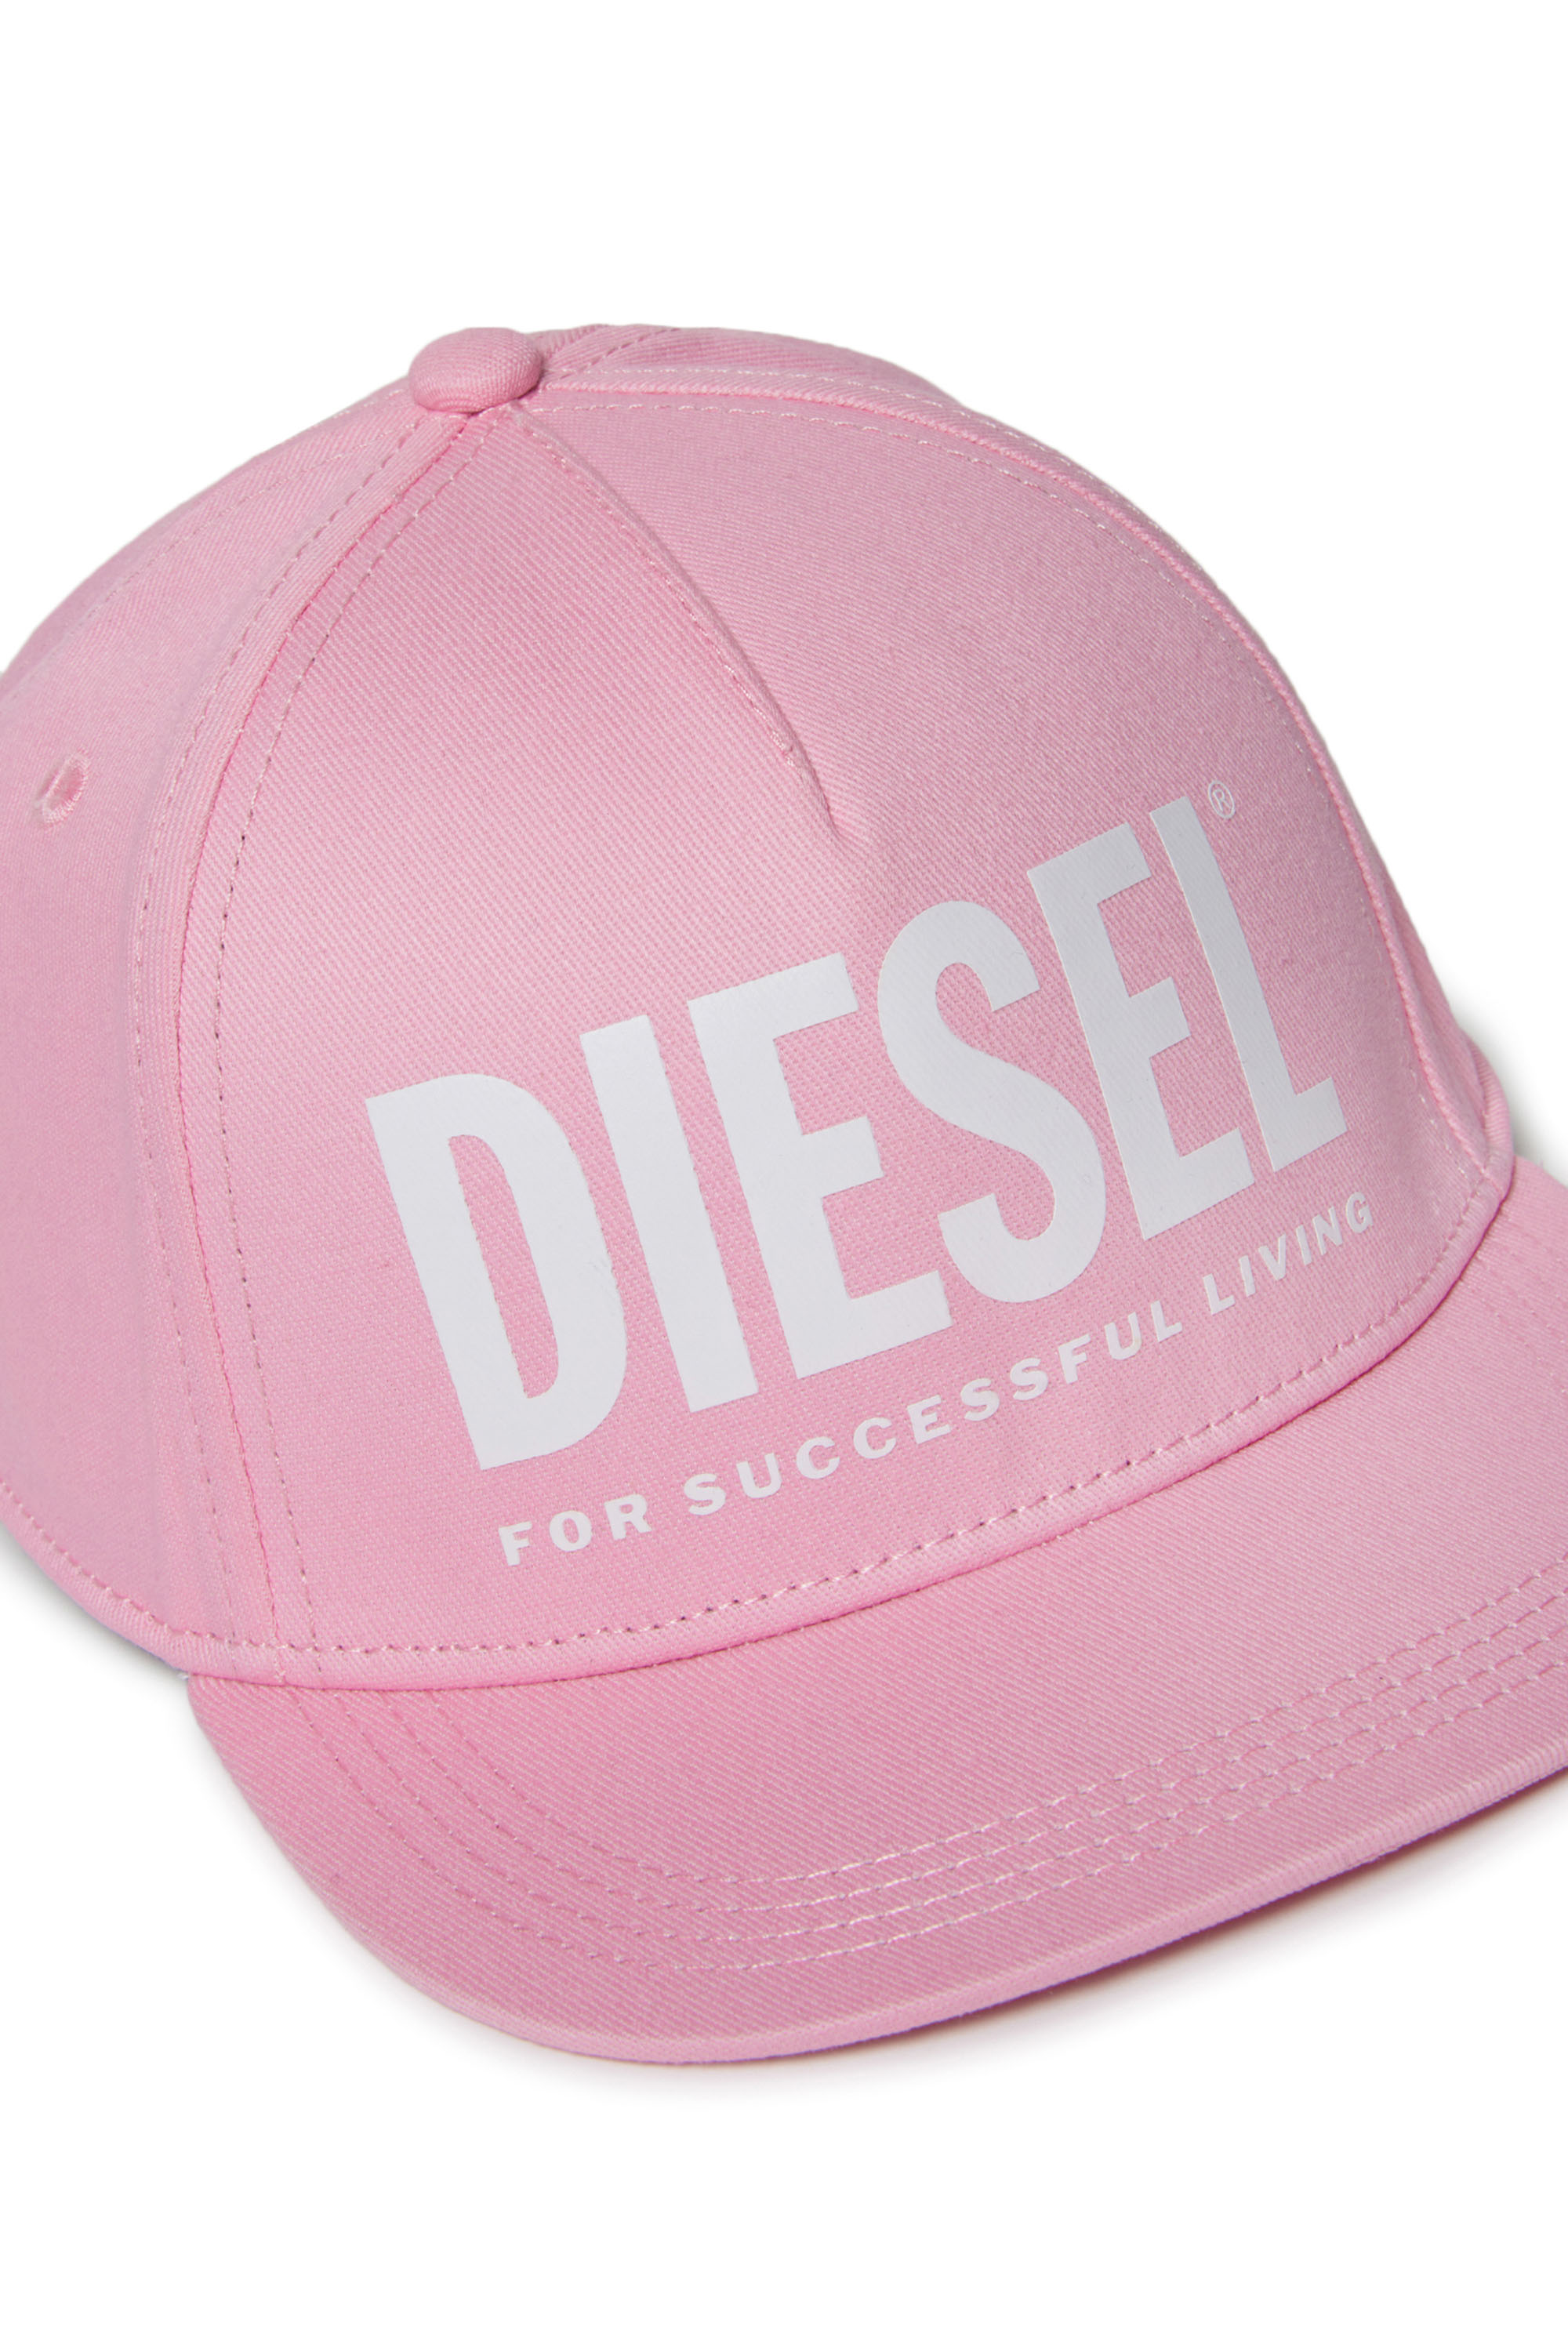 Diesel - FOLLY, Pink - Image 3